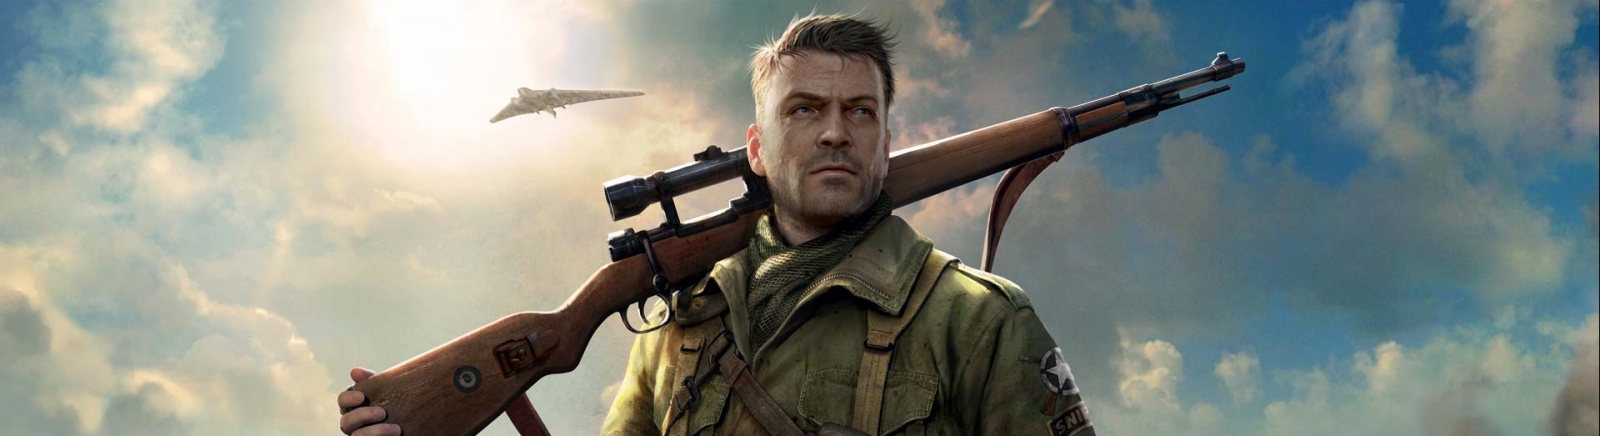 Дата выхода Sniper Elite 4  на PC, PS5 и Xbox Series X/S в России и во всем мире